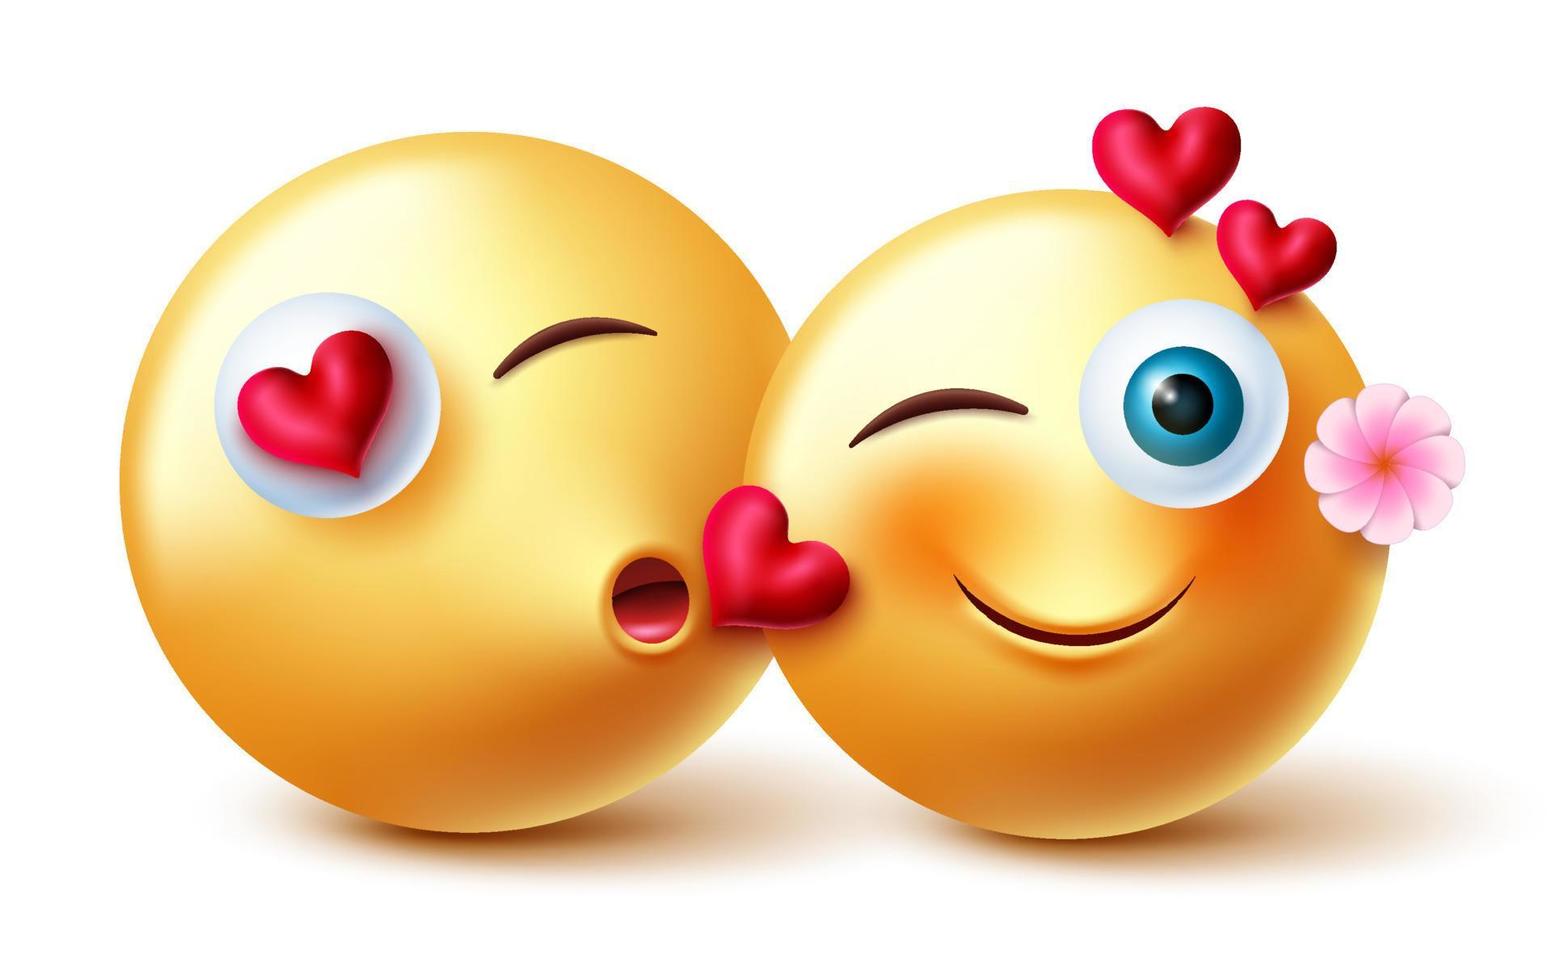 Emojis Valentinstag Paar Emojis Vektordesign. Inlove 3D-Emoji-Emoticon-Charaktere beim Küssen des romantischen Ausdrucks und der Geste für das Valentinstag-Inlove-Liebhaber-Charakterkonzept. Vektor-Illustration. vektor